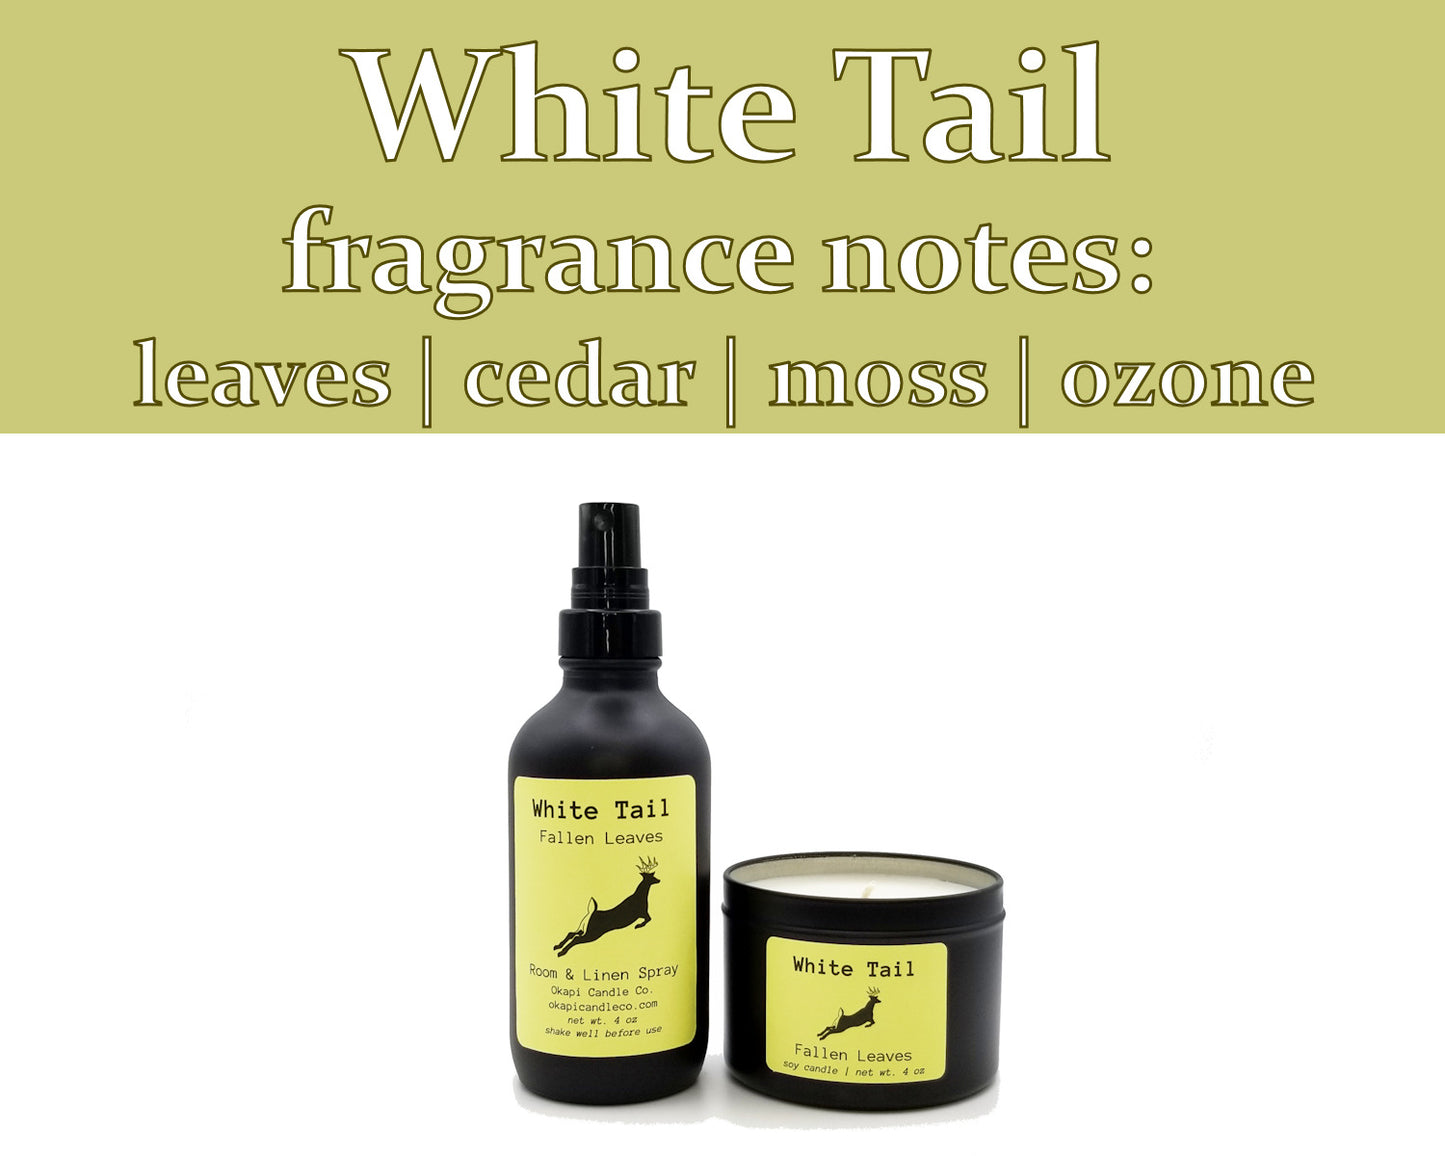 White Tailed Deer Room & Linen Spray - Fallen Leaves Fragrance